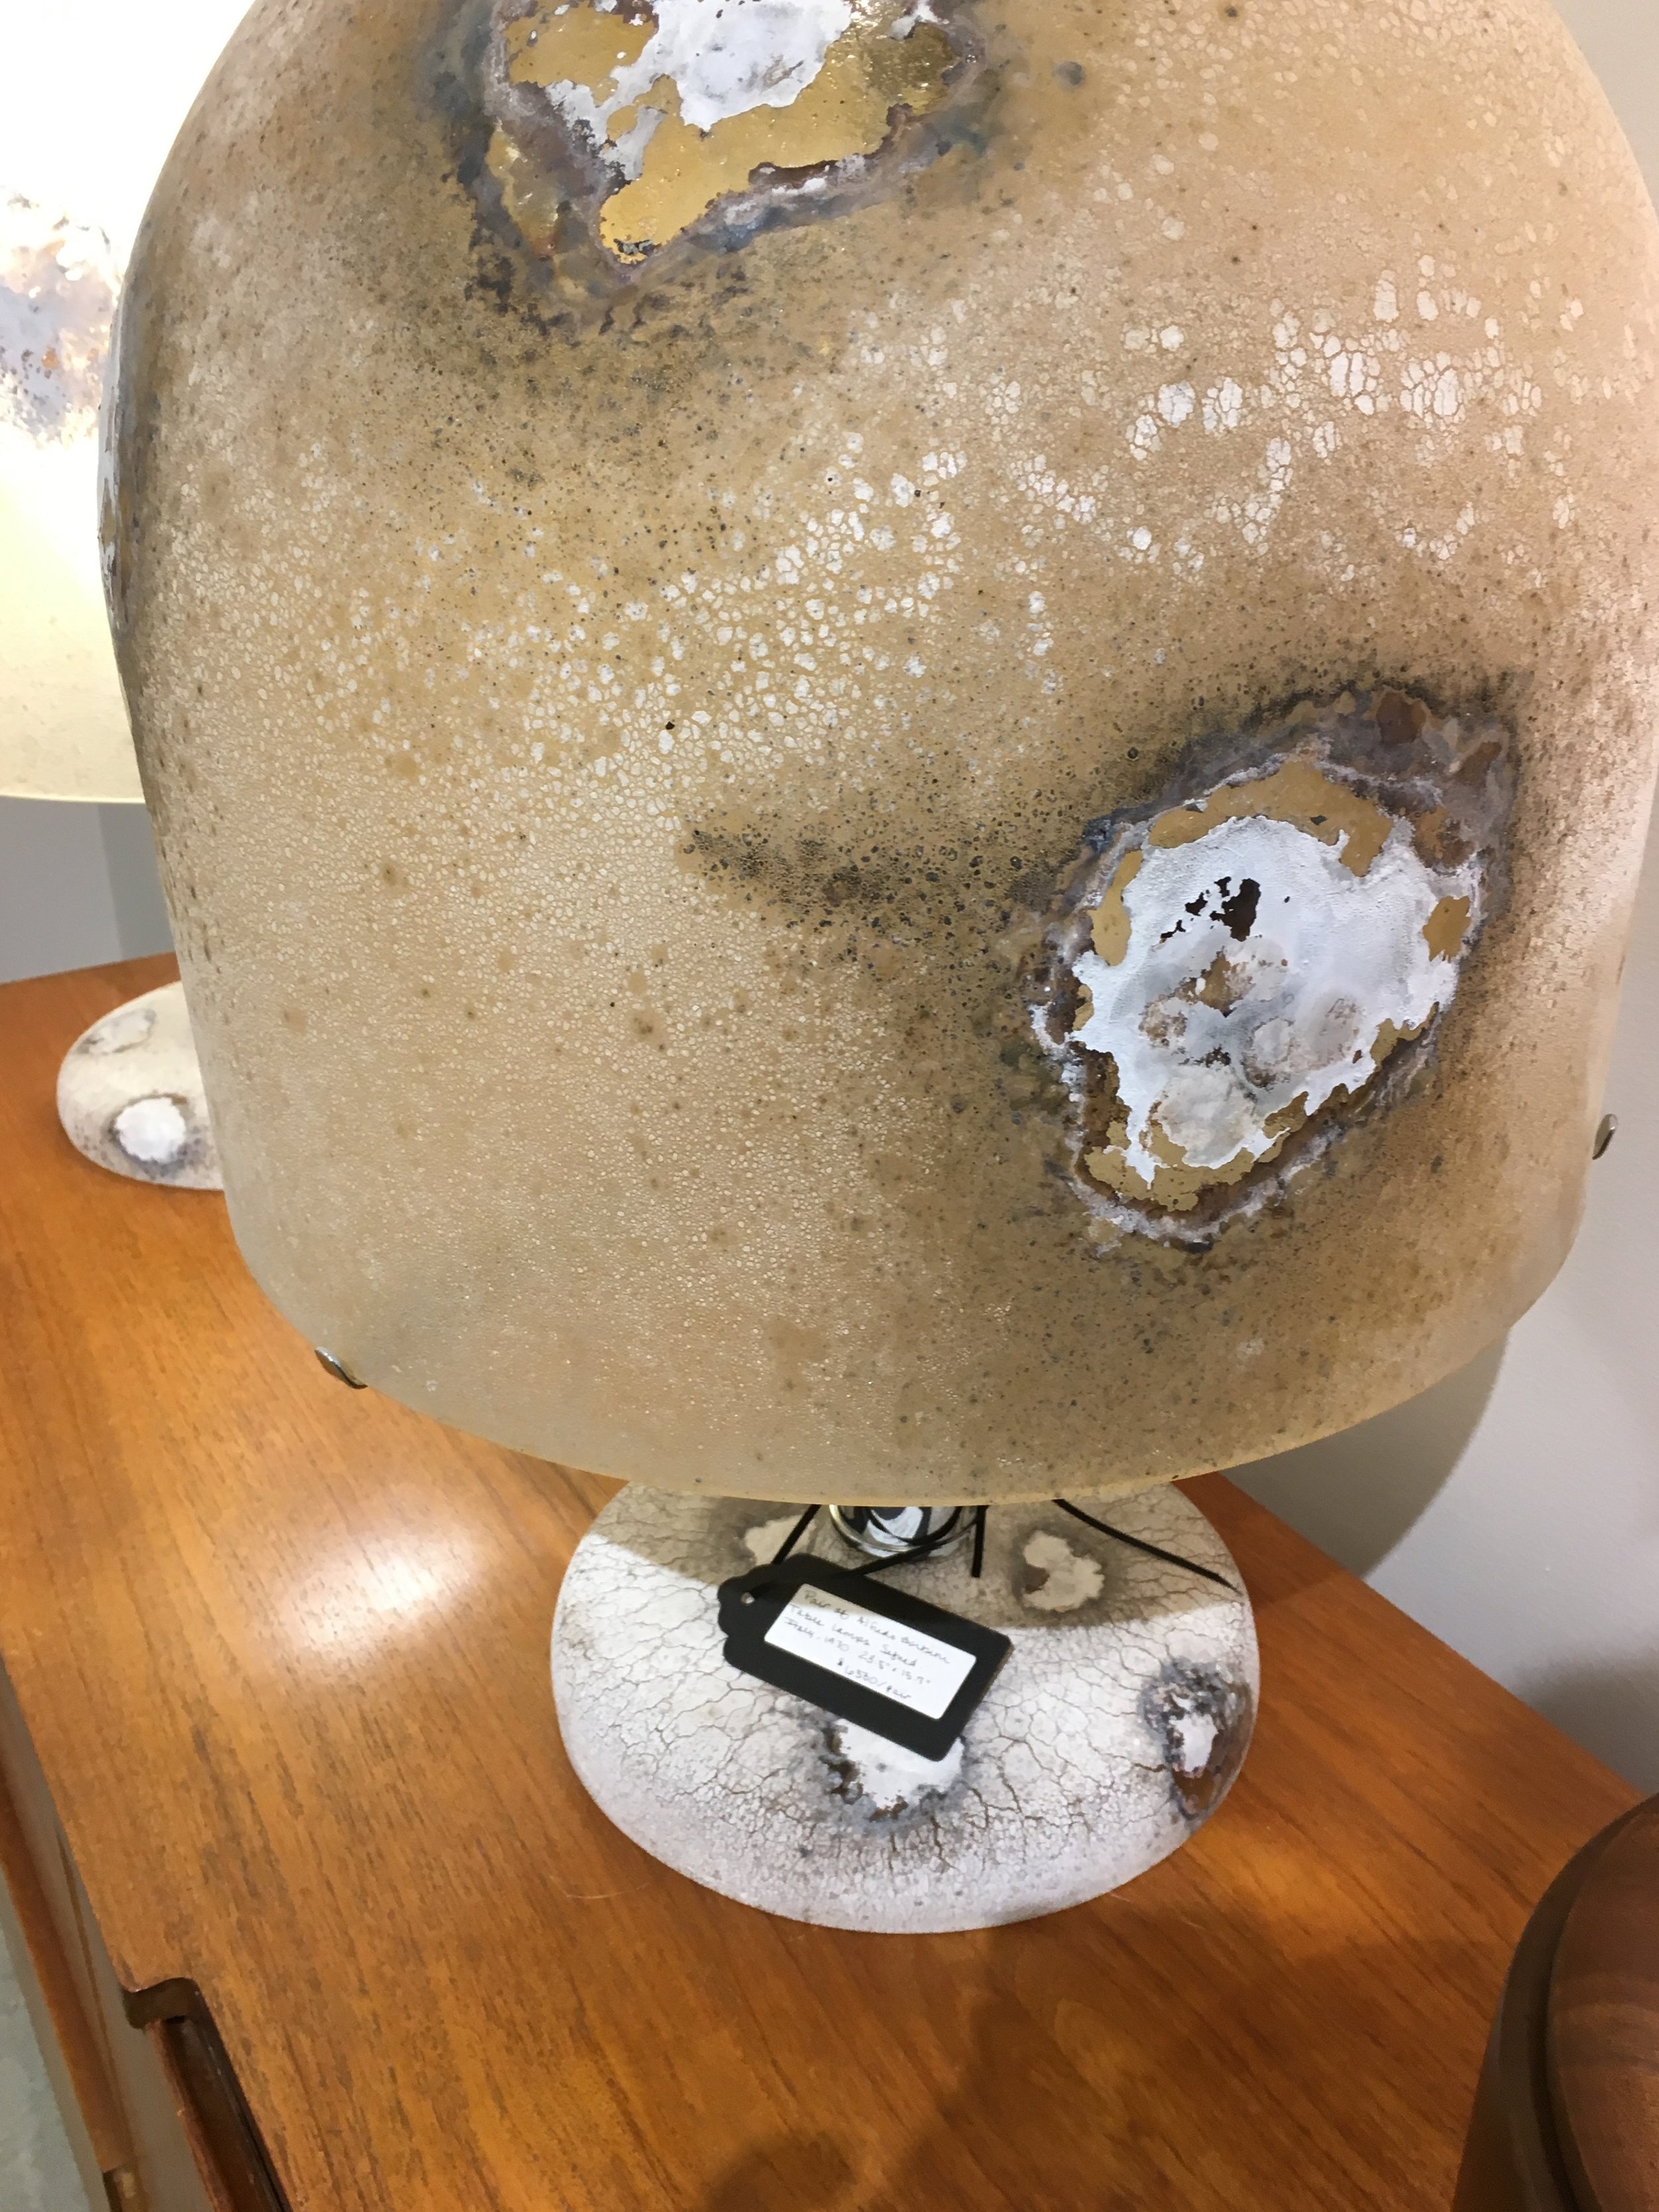 Diseased mushroom lamp